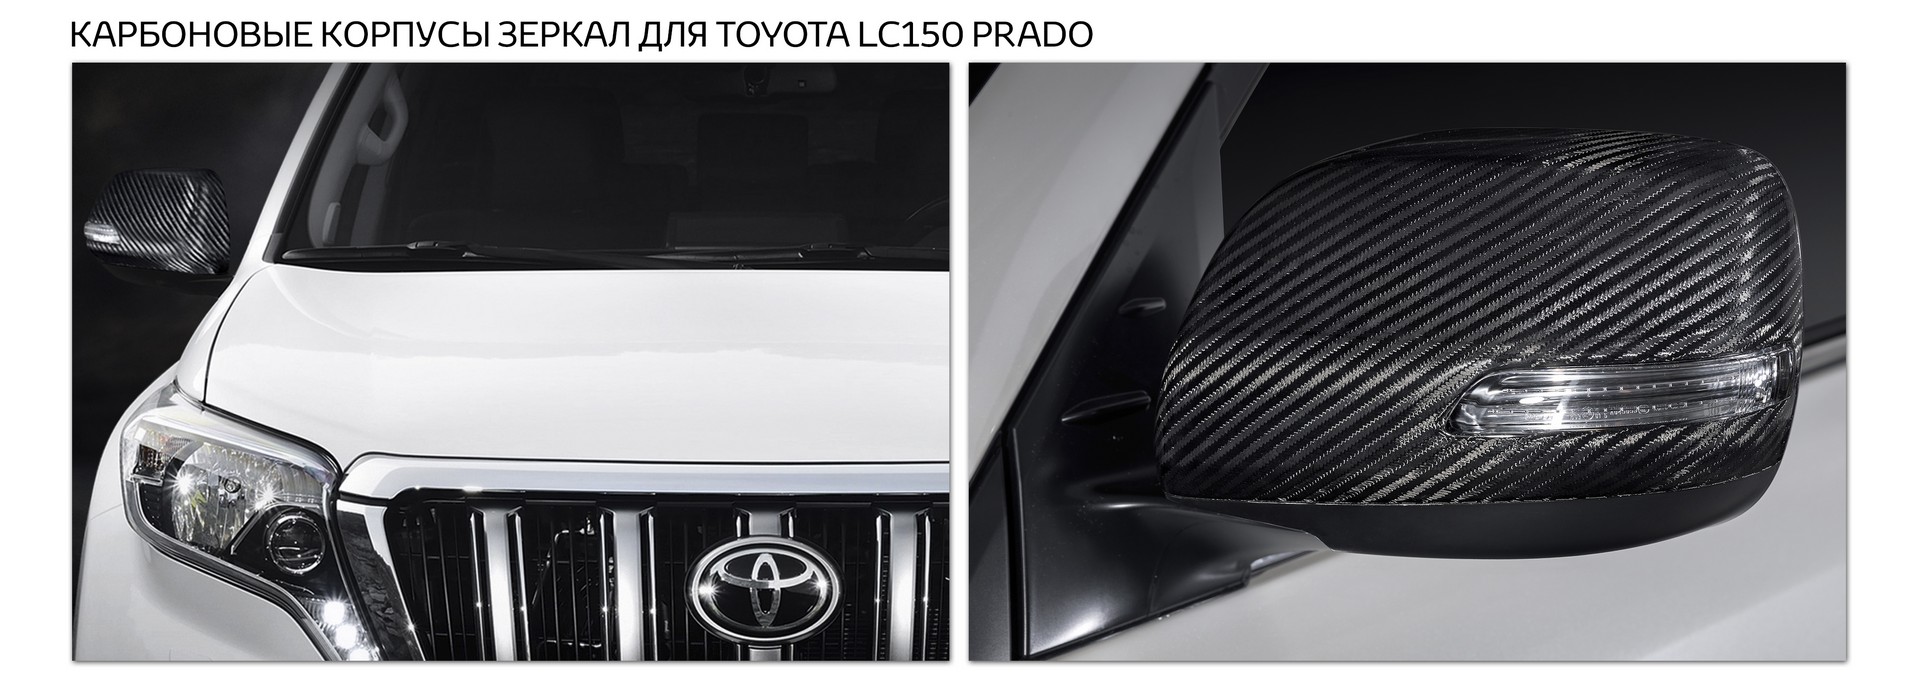 Карбоновые корпуса зеркал для Toyota LC150 Prado